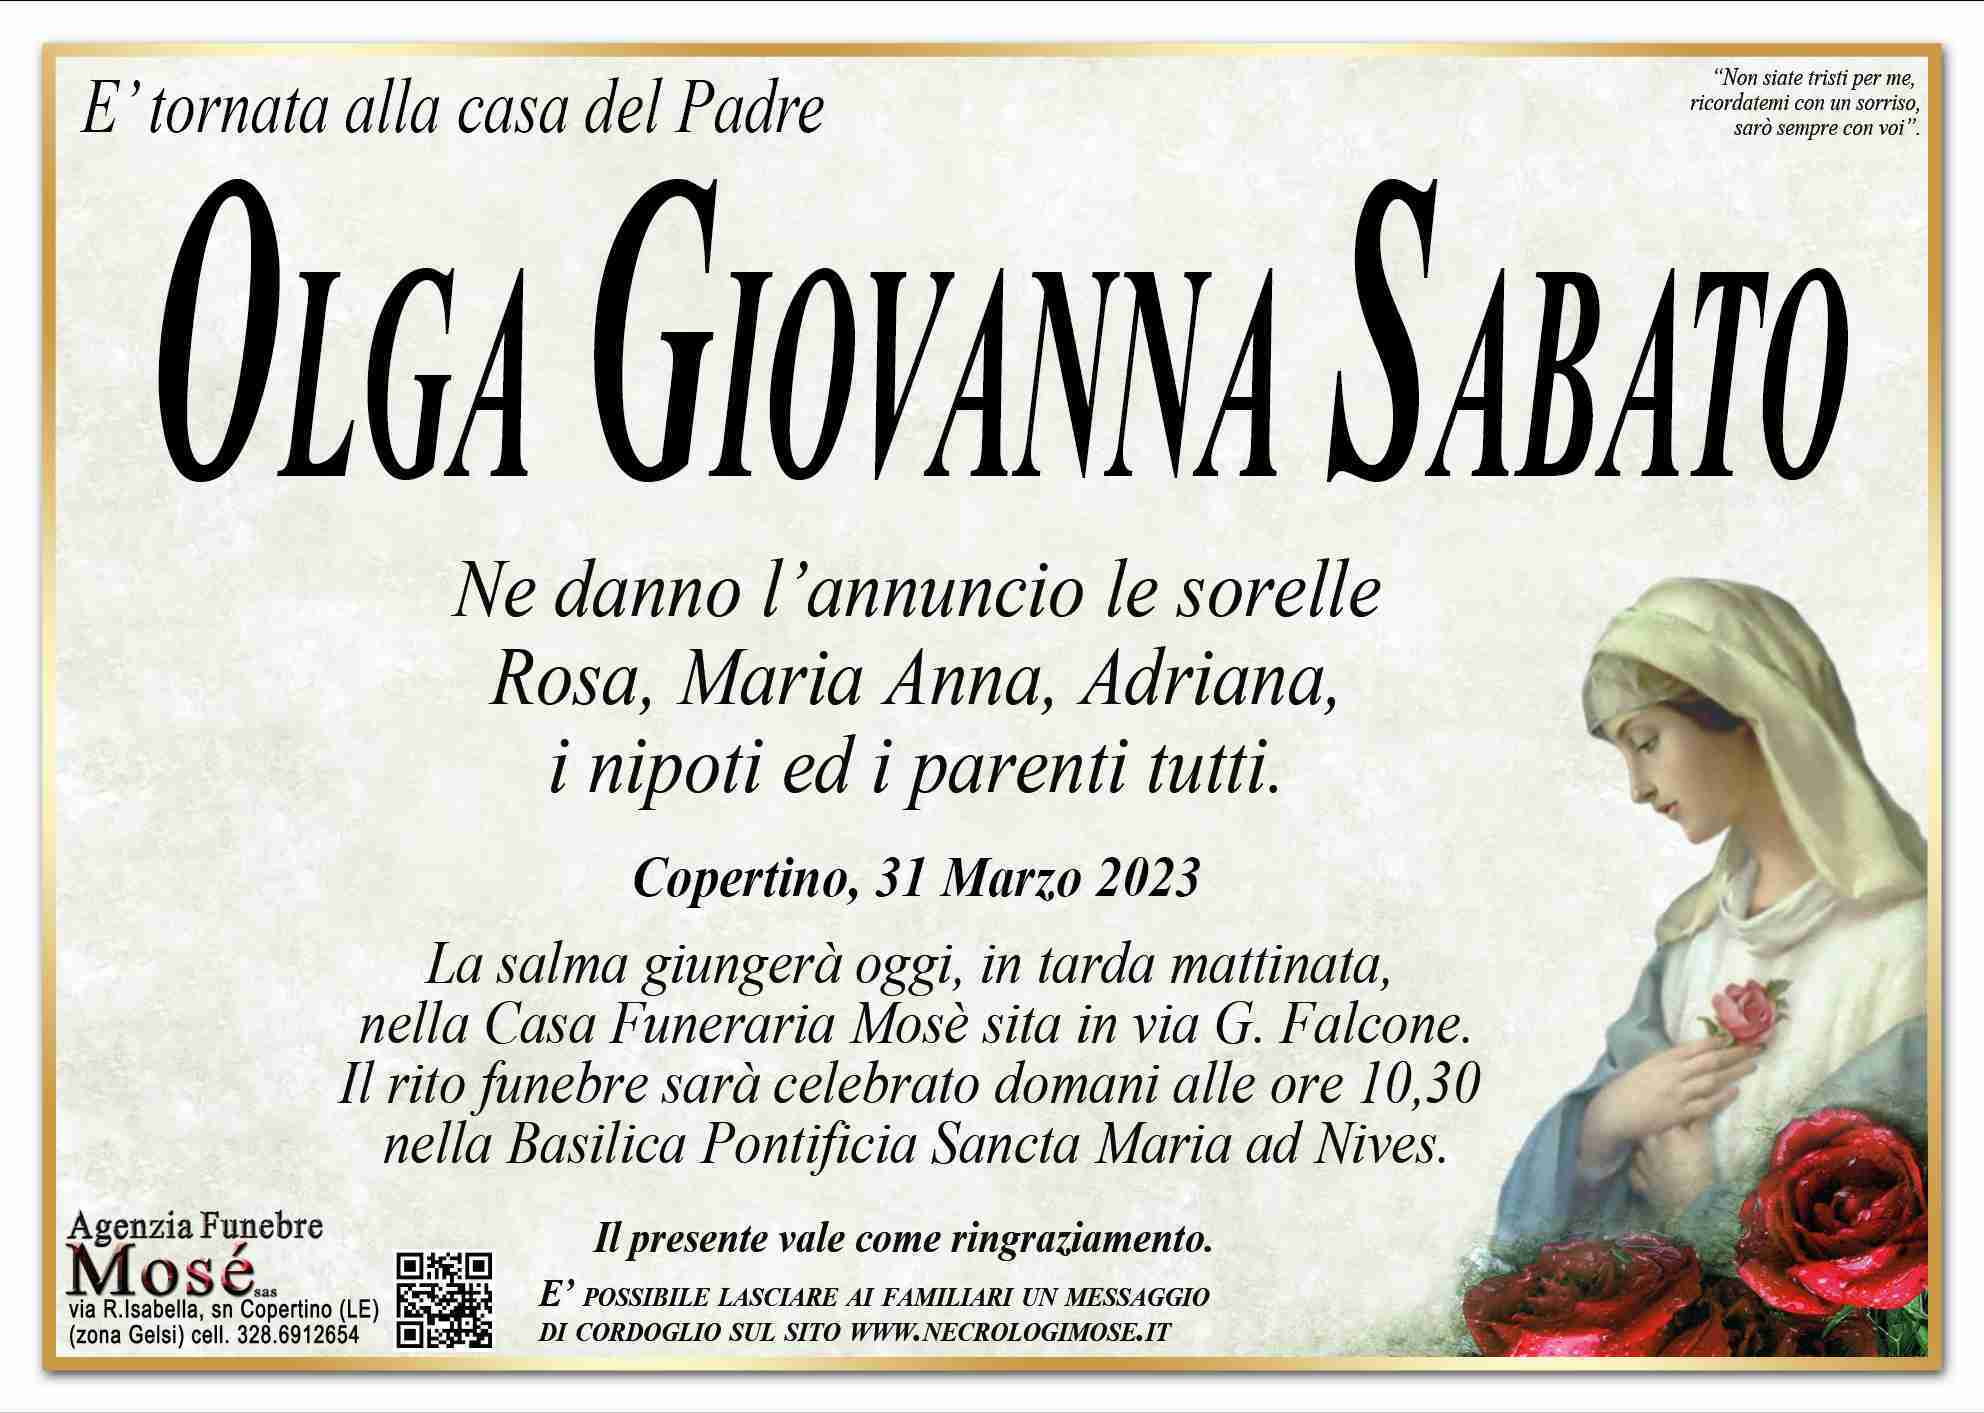 Sabato Olga Giovanna